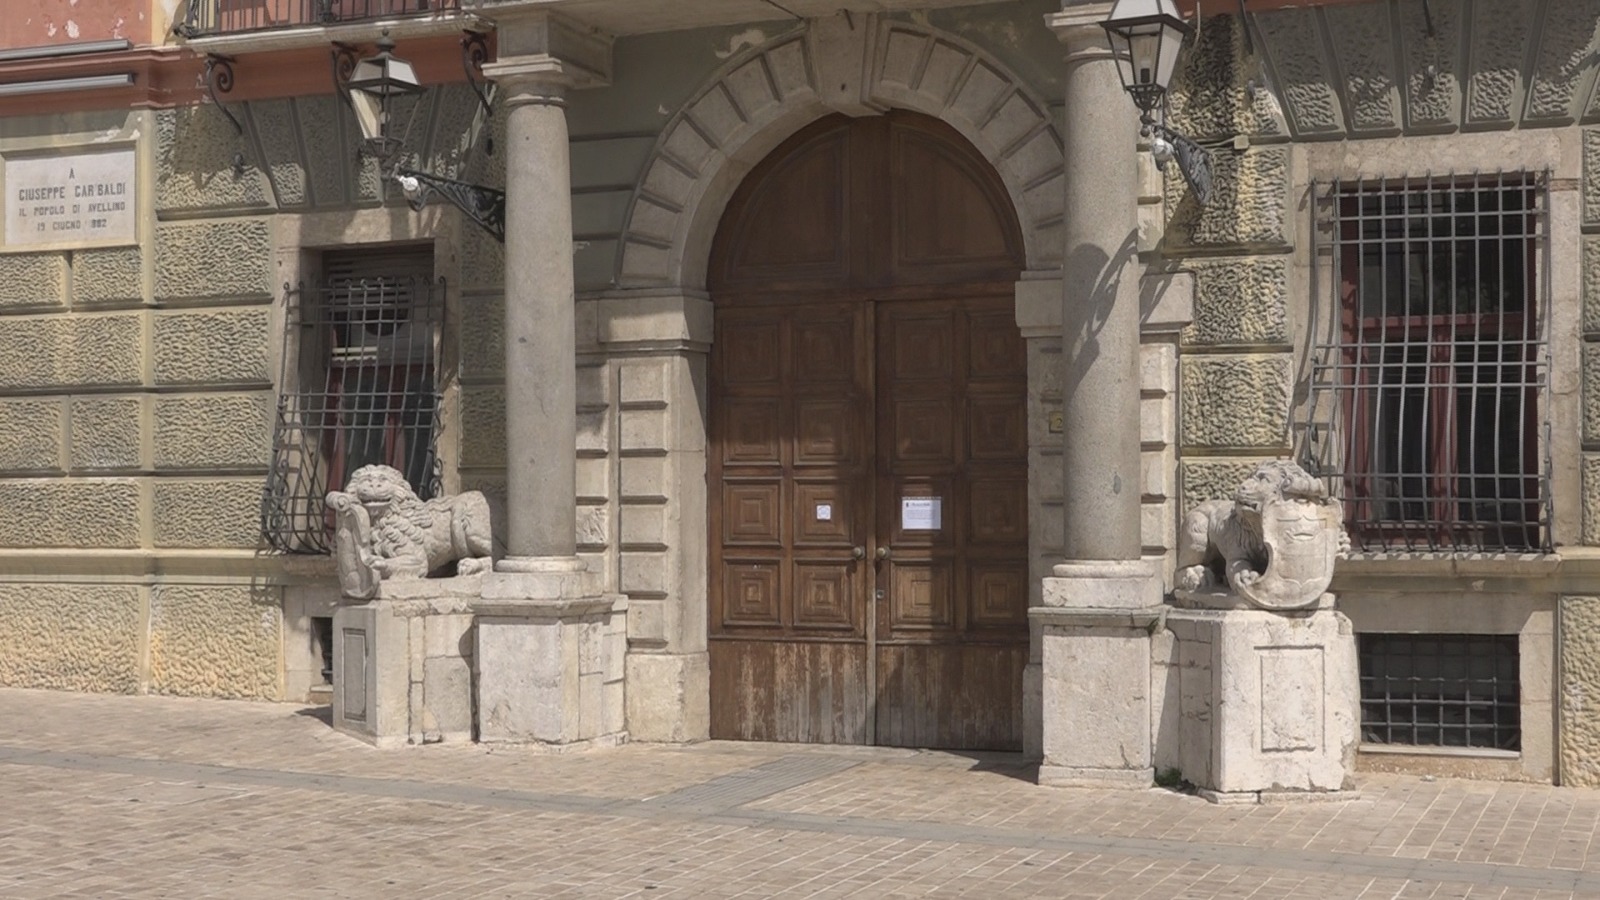 Avellino| Covid-19, positivi 4 dipendenti della Provincia. Palazzo Caracciolo resta chiuso